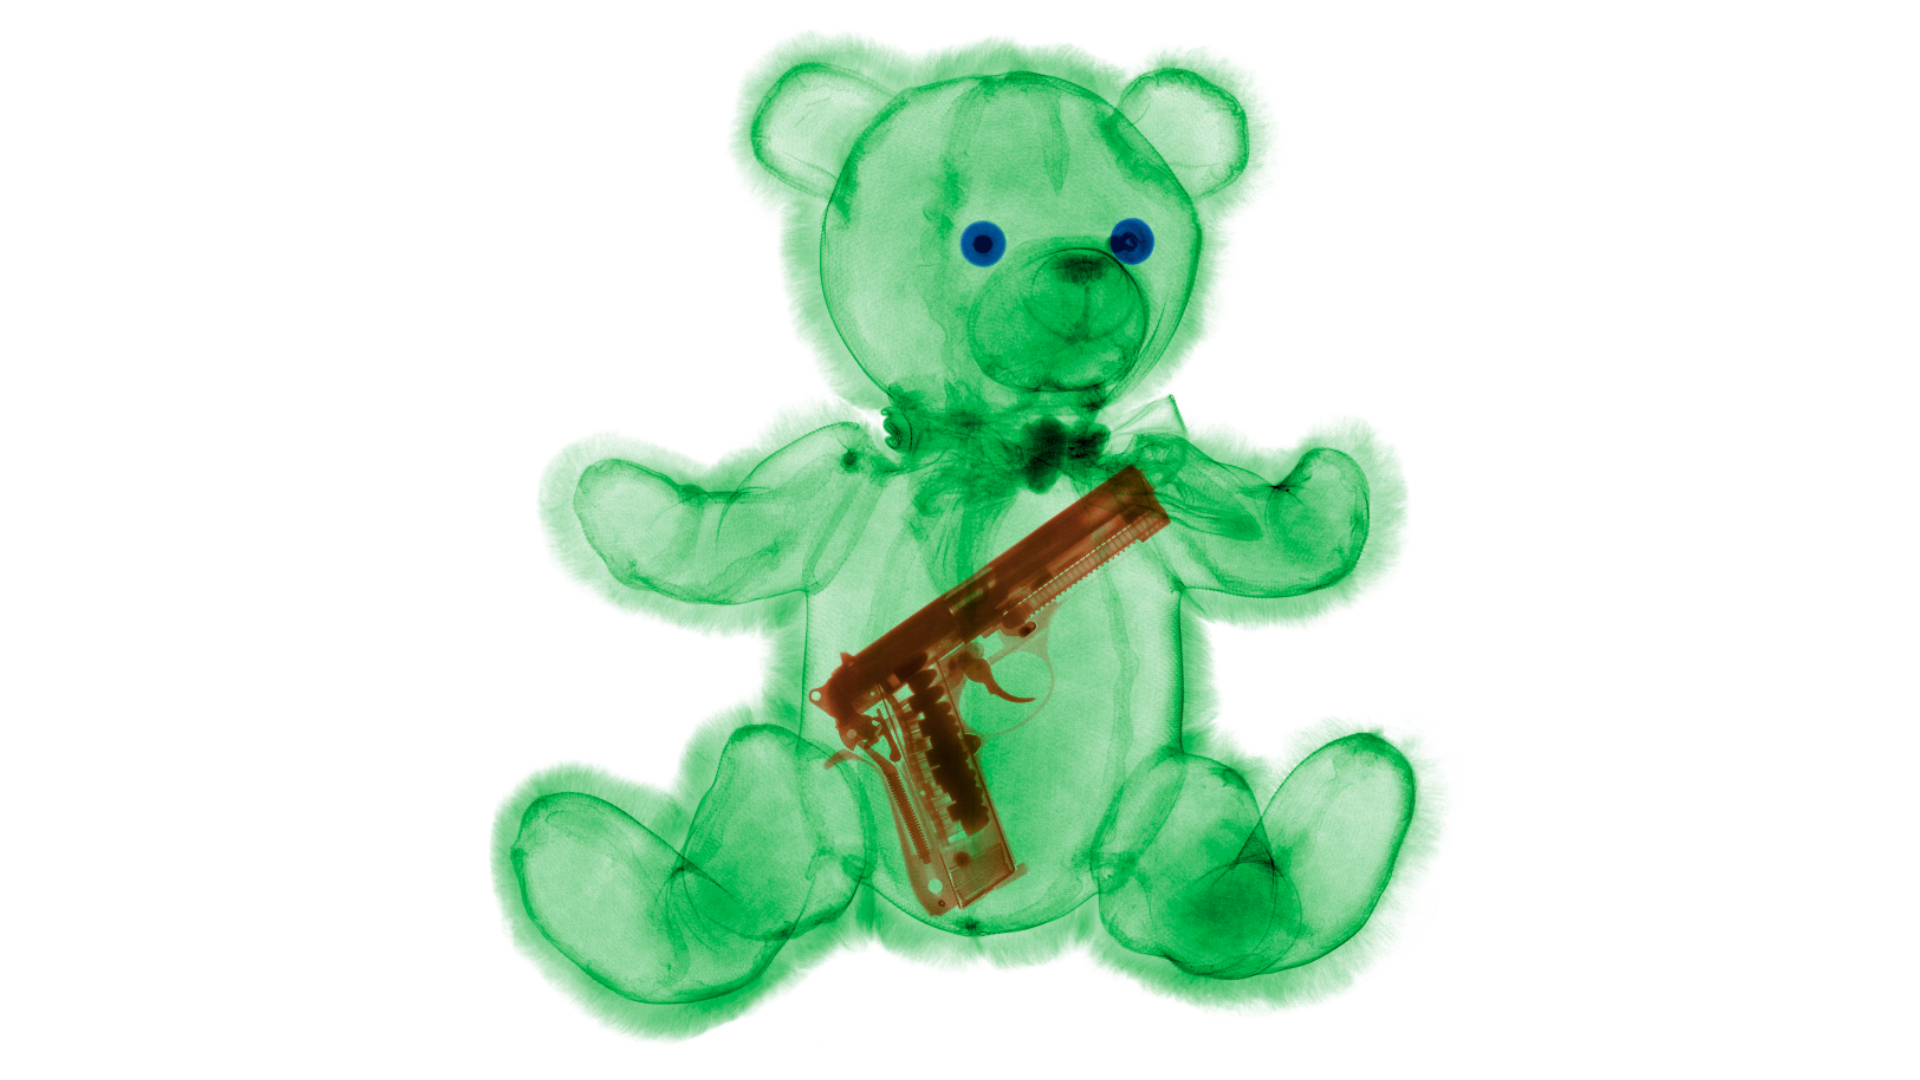 Weapon inside of teddy bear